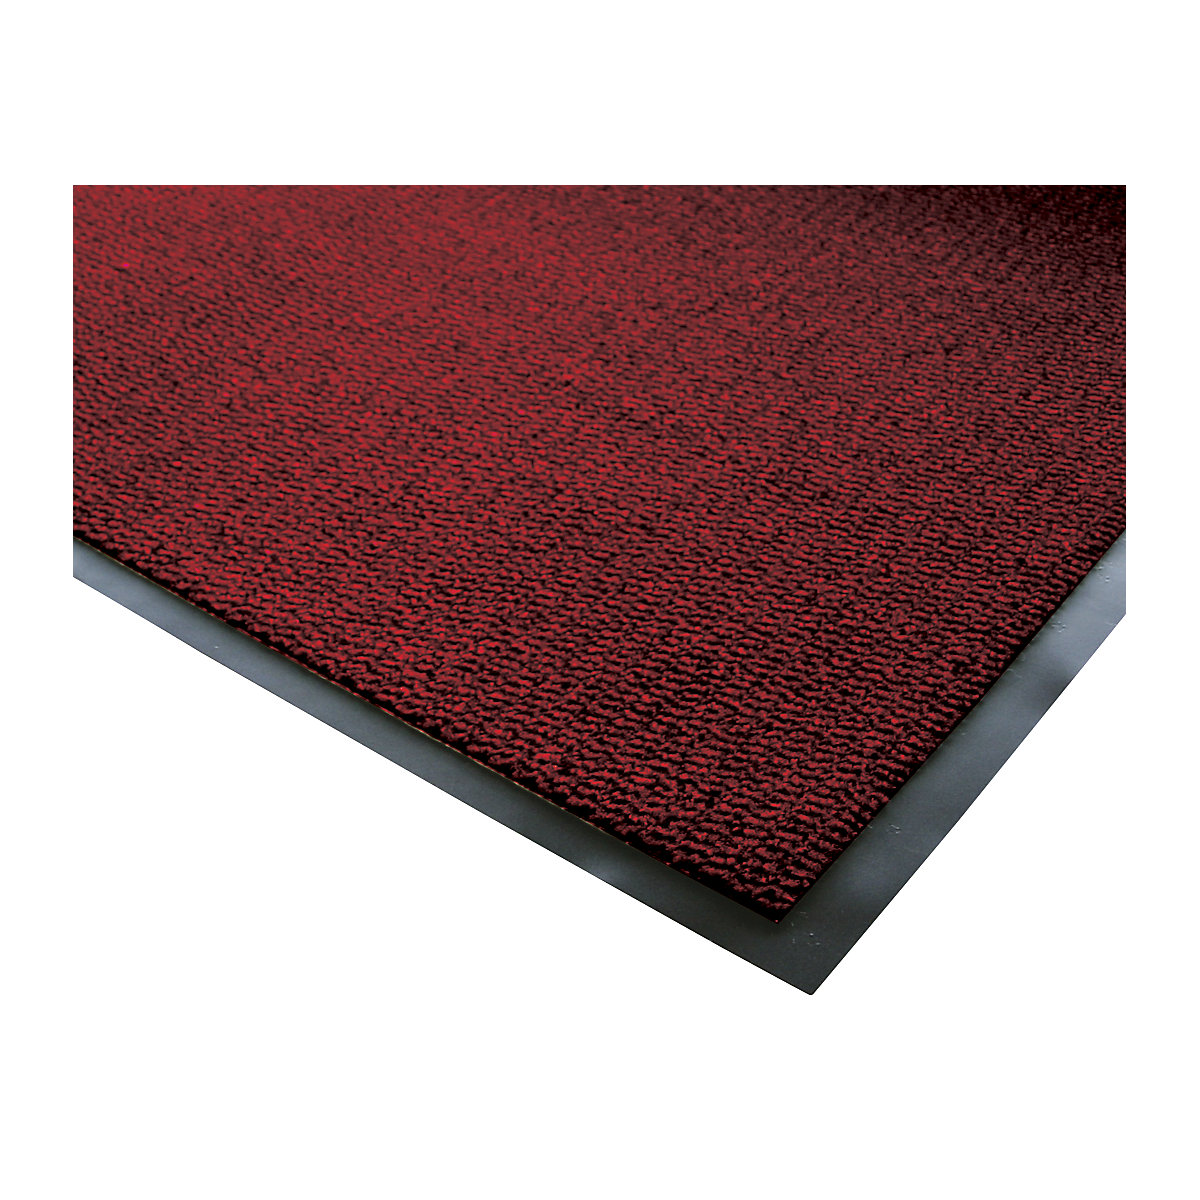 Stuoia catturasporco per interni, pelo in polipropilene – COBA, larghezza 1200 mm x metro lineare, nero / rosso-7